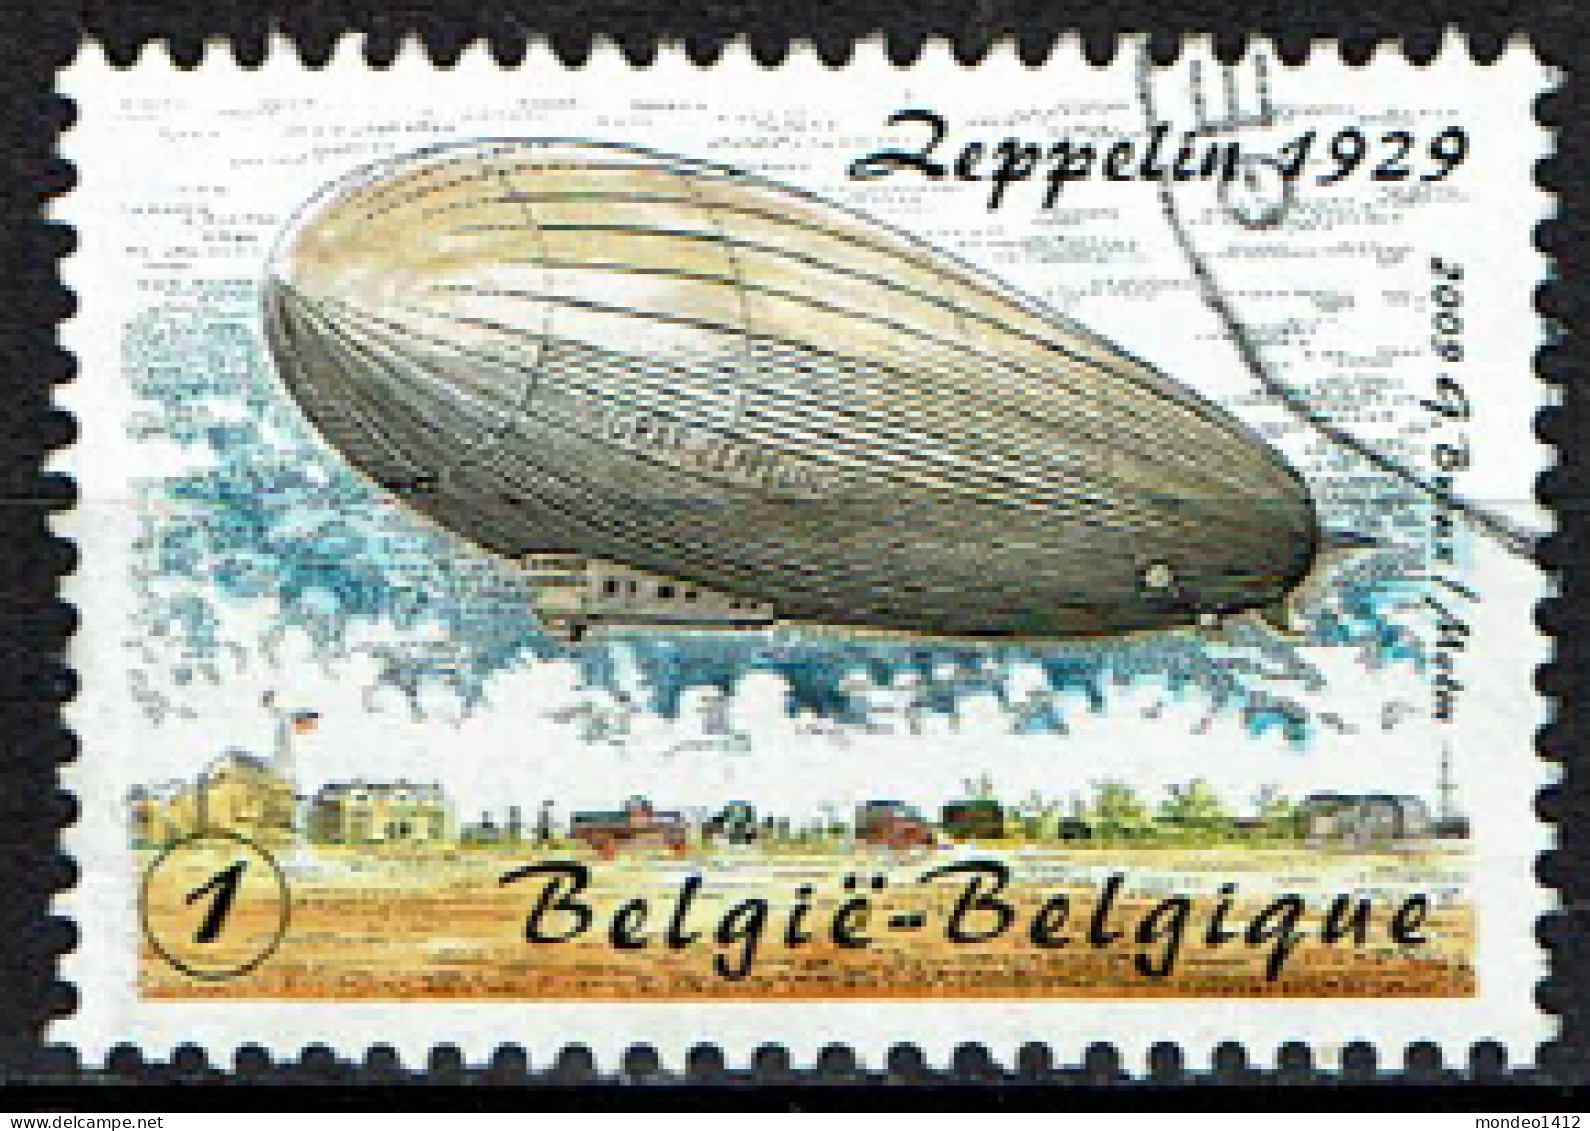 België OBP 3919 - Luchtvaart, Zeppelin - Oblitérés